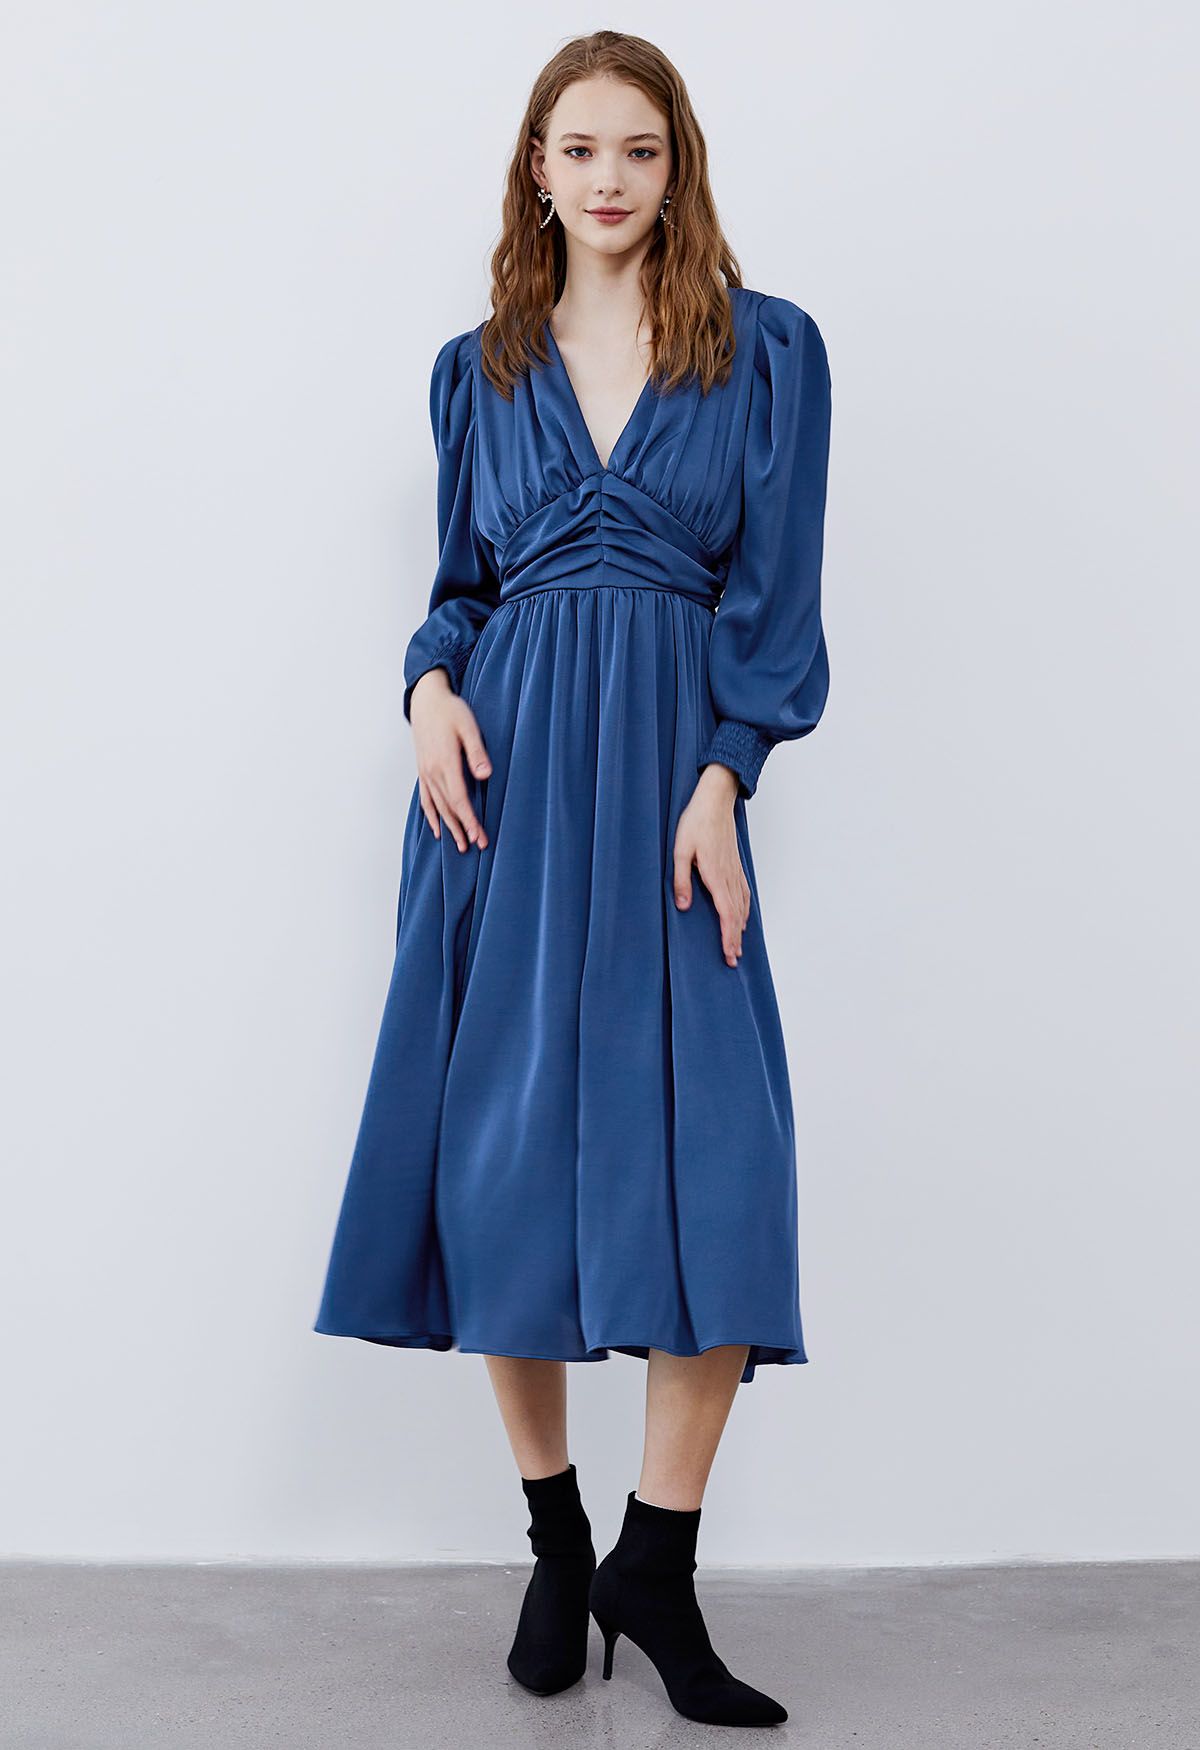 فستان ميدي مكشكش وياقة على شكل حرف V وأكمام منتفخة باللون الأزرق الداكن